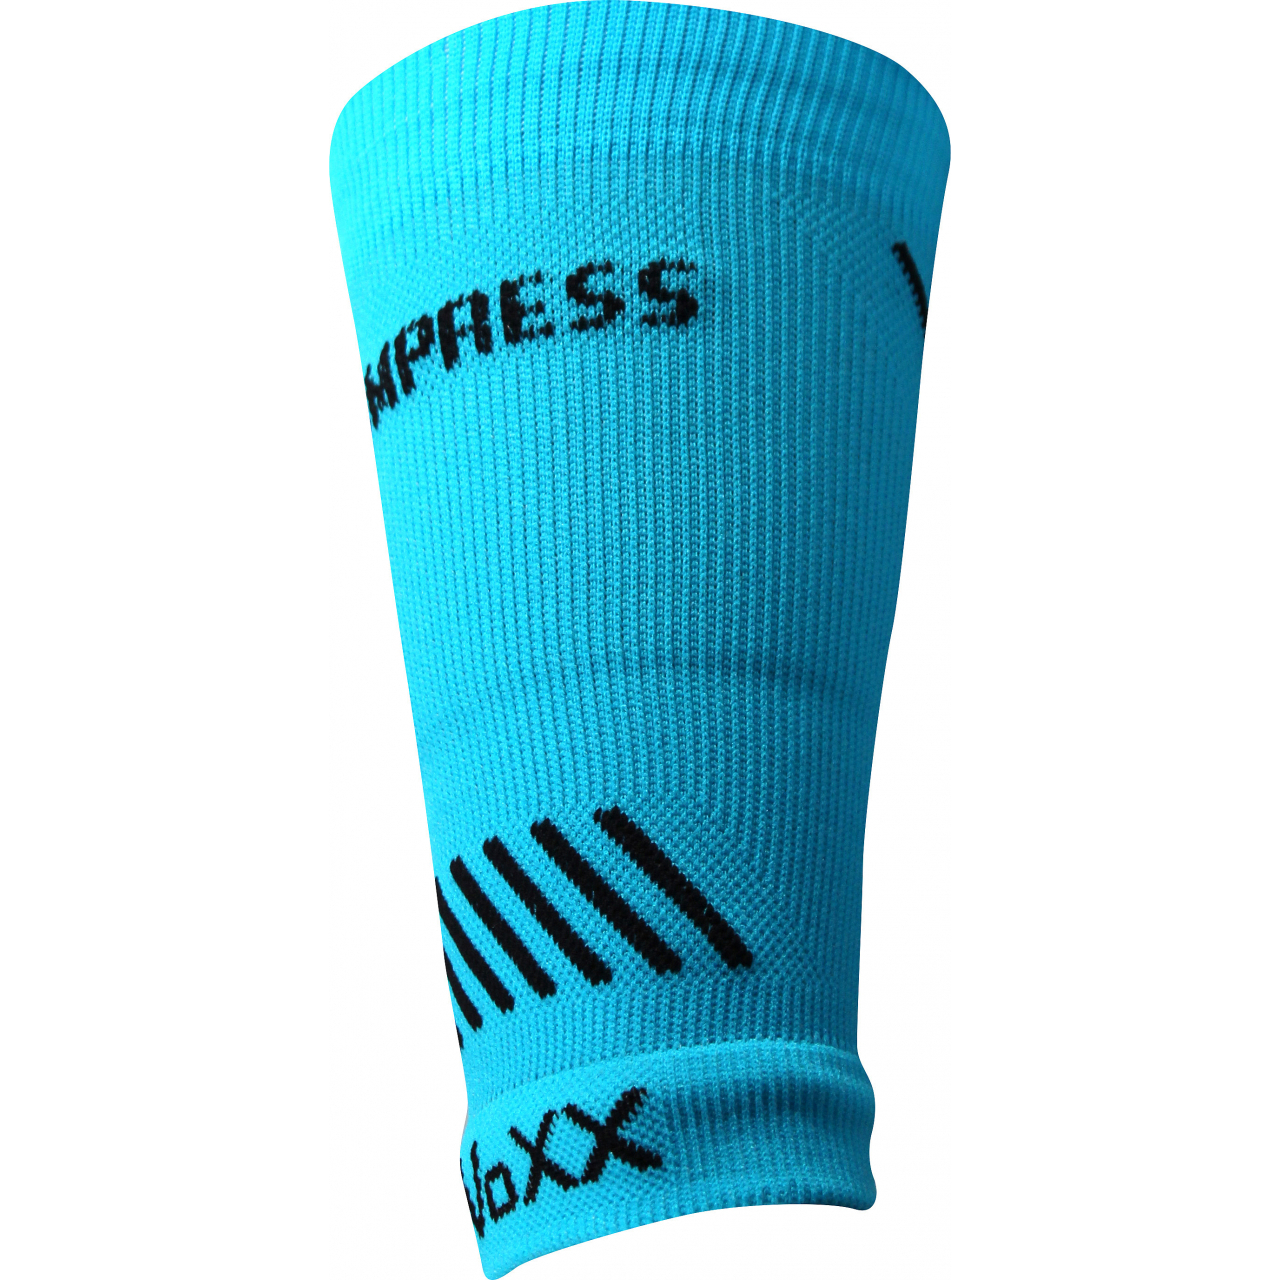 Návlek kompresní Voxx Protect zápěstí - modrý svítící, L/XL